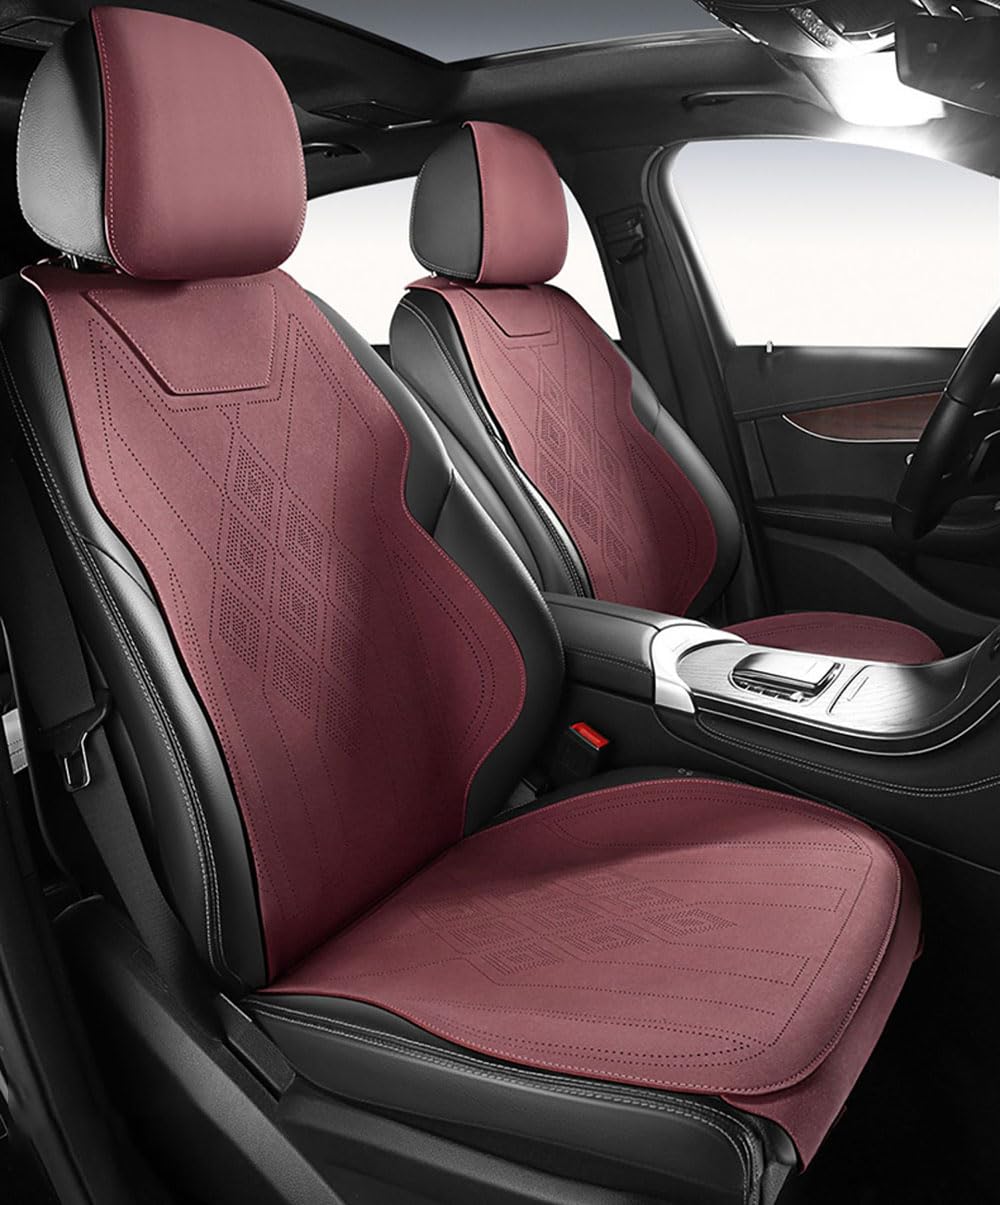 TQWUY Auto Sitzbezüge Sets für Ford Mondeo MK4 2007-2014 5-Sitze vorne und hinten Wasserdicht Verschleißfest Innenraum Accessories, E-red-Split type von TQWUY